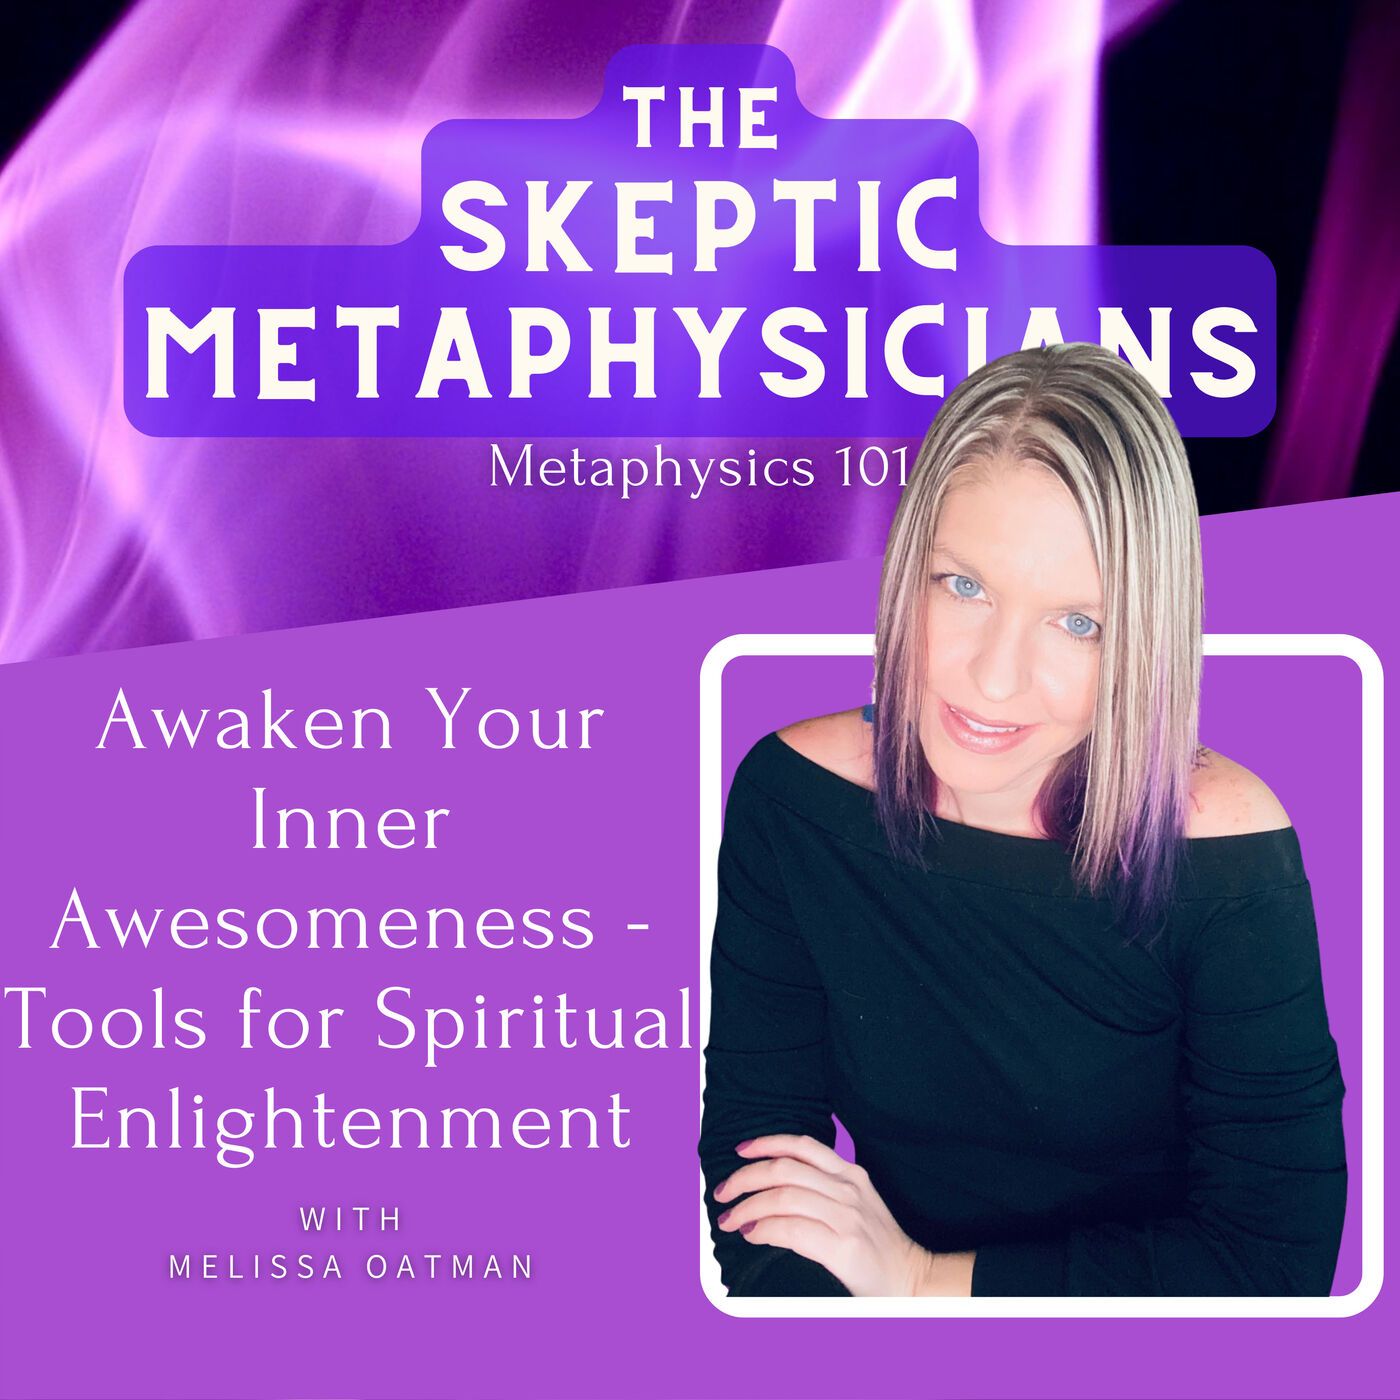 Awaken Your Inner Awesomeness - Tools for Spiritual Enlightenment | Melissa Oatman Image